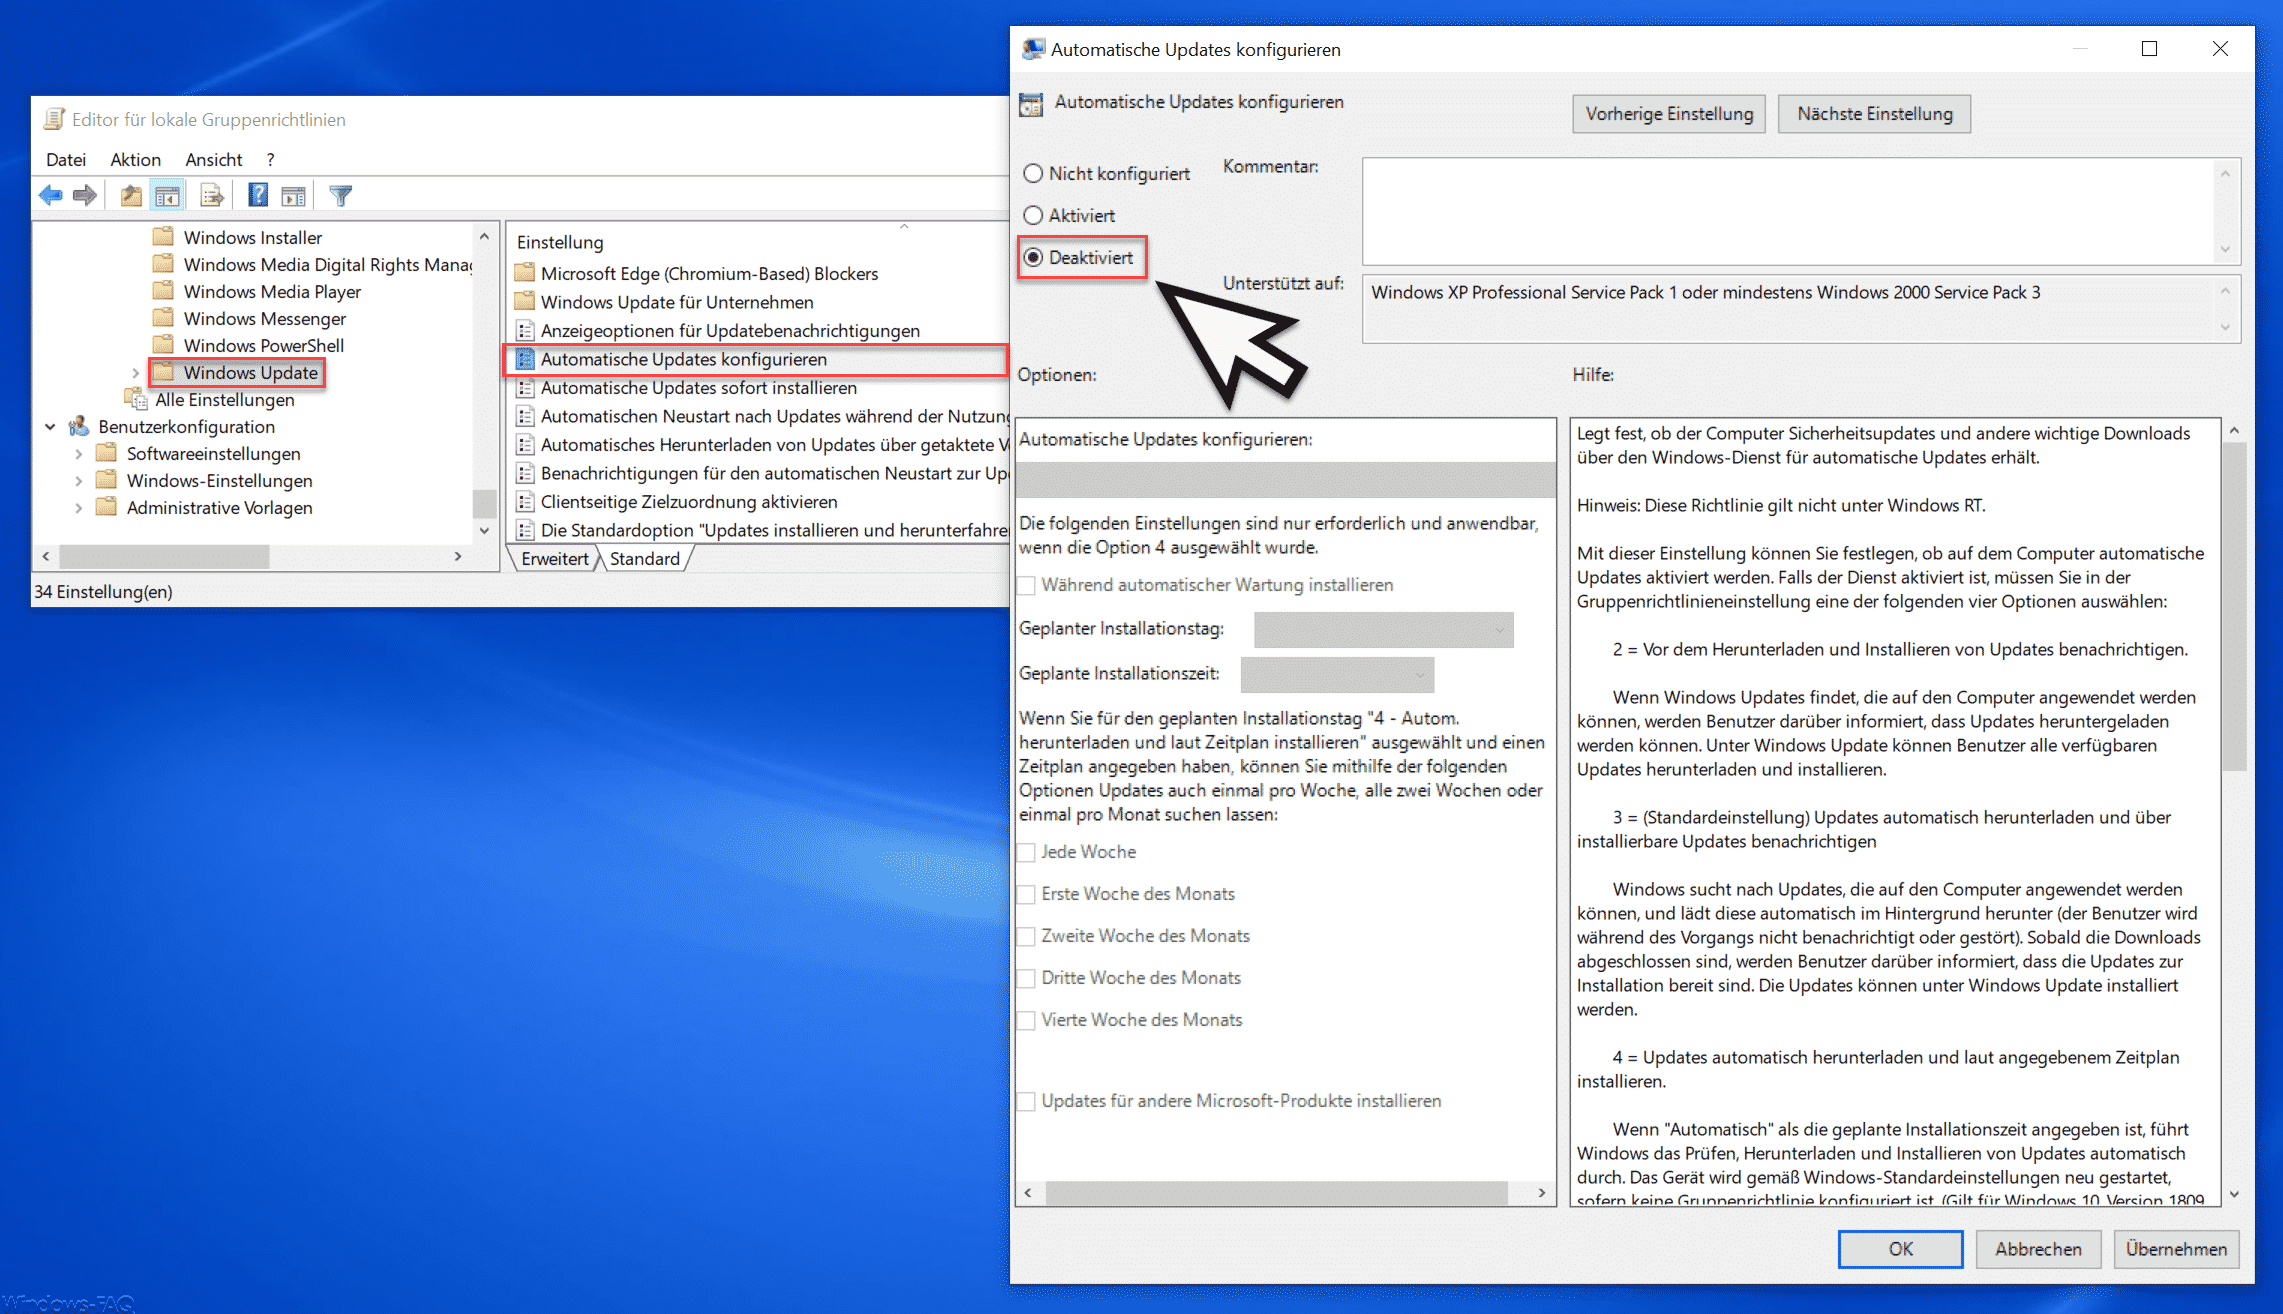 Überprüfen Sie, ob das Windows Update auf Automatisch eingestellt ist.
Stellen Sie sicher, dass die Option Updates automatisch herunterladen und installieren aktiviert ist.